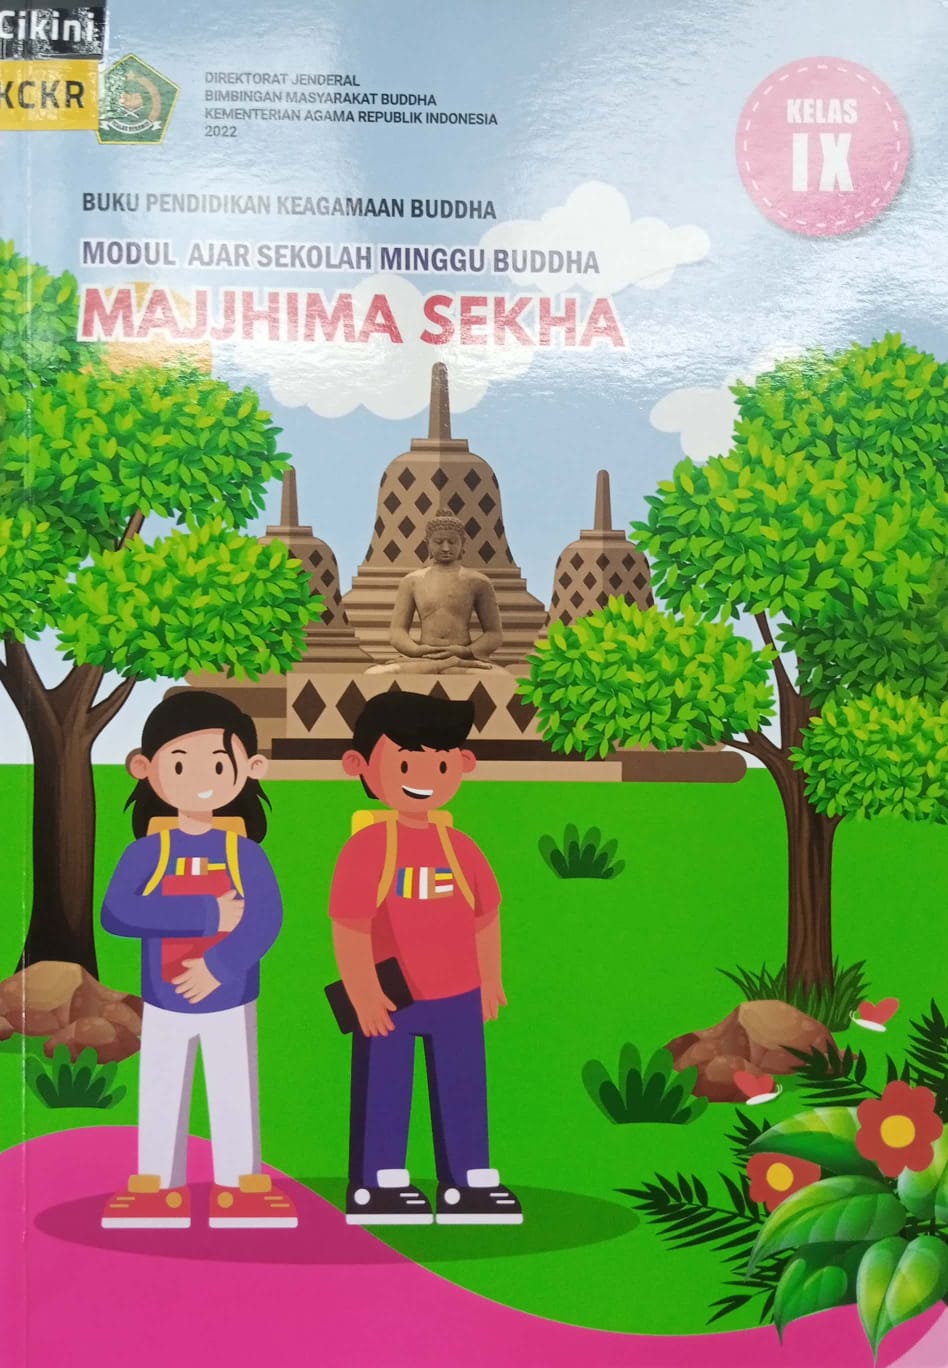 Buku pendidikan keagamaan Buddha modul ajar sekolah minggu Buddha majjhima sekha :  kelas IX